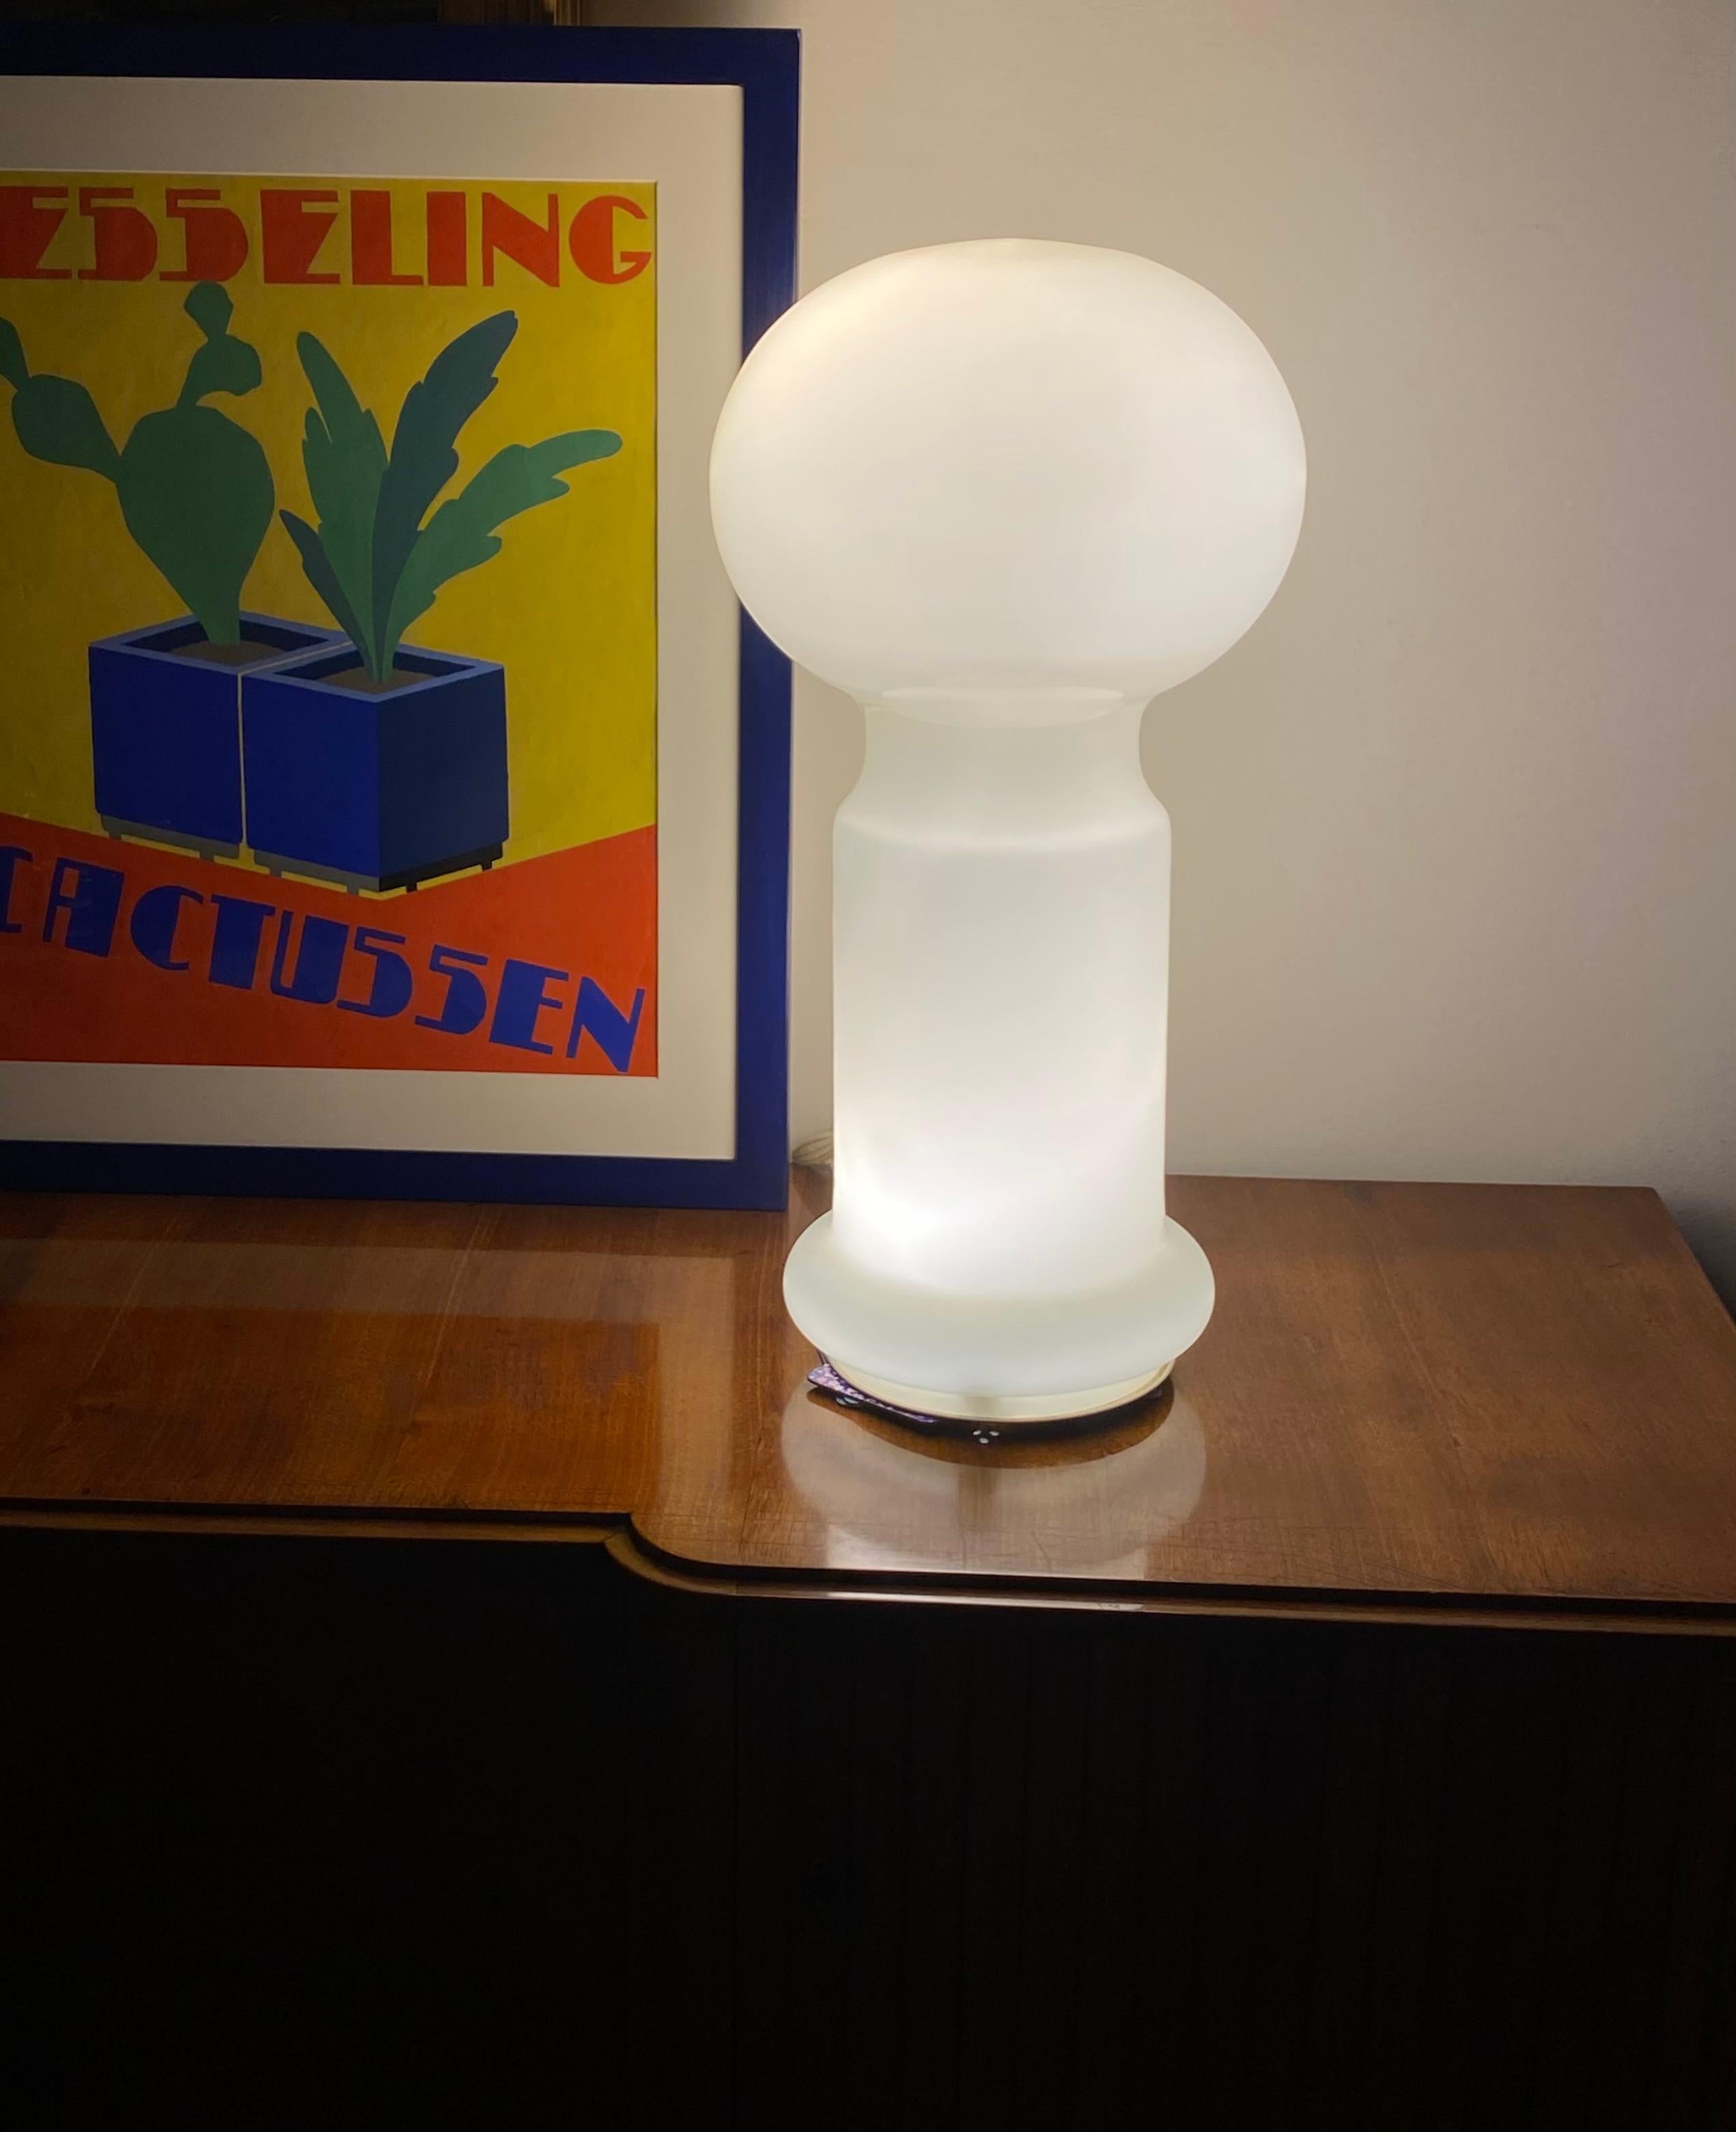 Lampe de table en verre Murano de l'ère spatiale.

Vistosi, Italie Années 1960

Verre jaune pâle / beige. 

Trois ampoules à l'intérieur ; une grande avec une douille E27 au sommet et deux ampoules E14 à la base.

H 62 cm - 33 cm diam.

Condit :